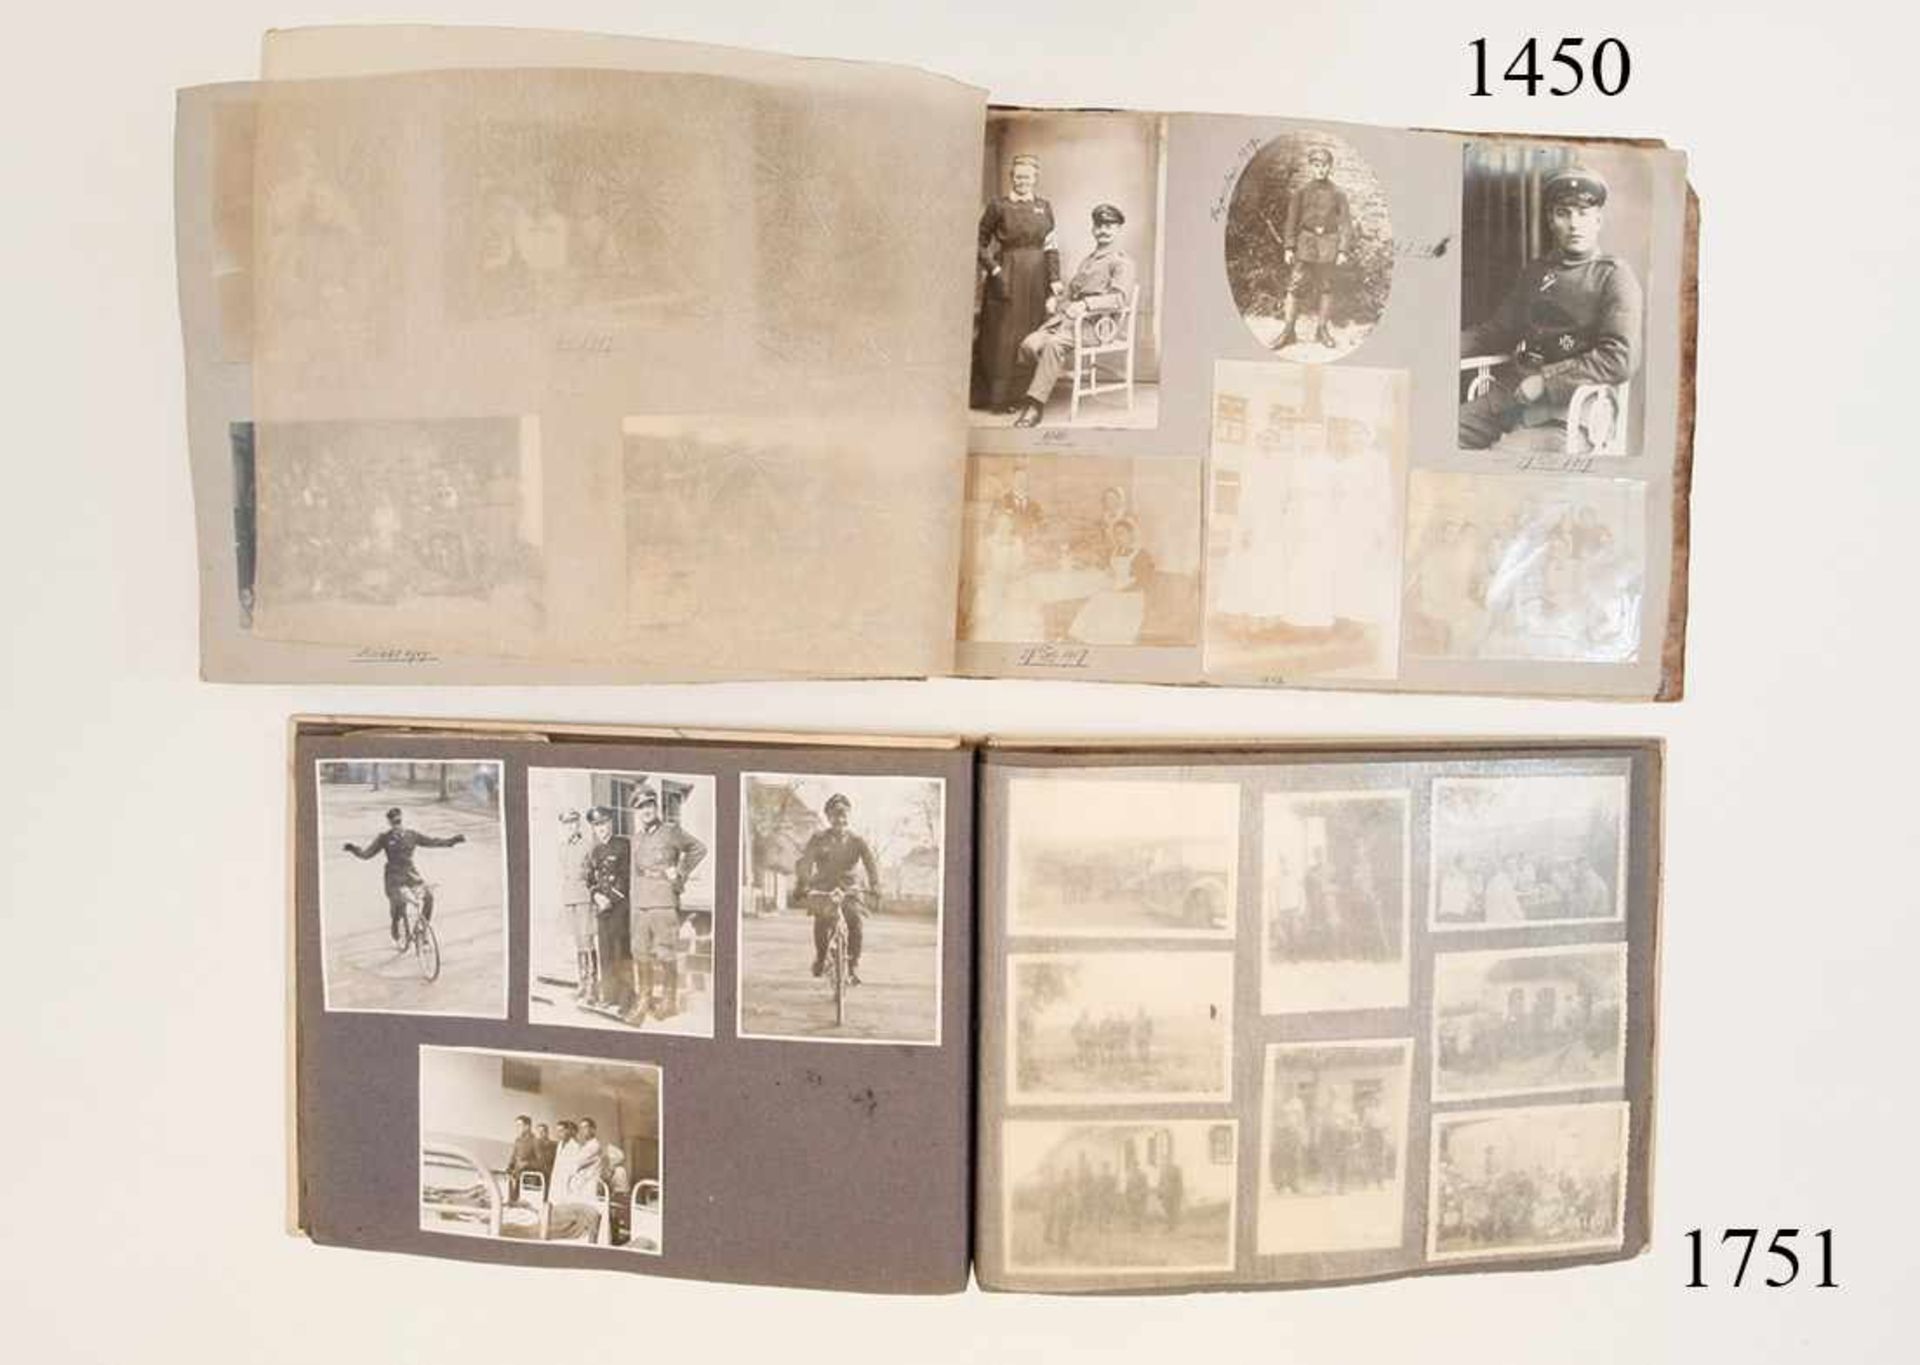 Fotoalbum einer Kriegskrankenschwester 1917100 private Fotos. 11x7,5cm. Bilder von Schwestern,